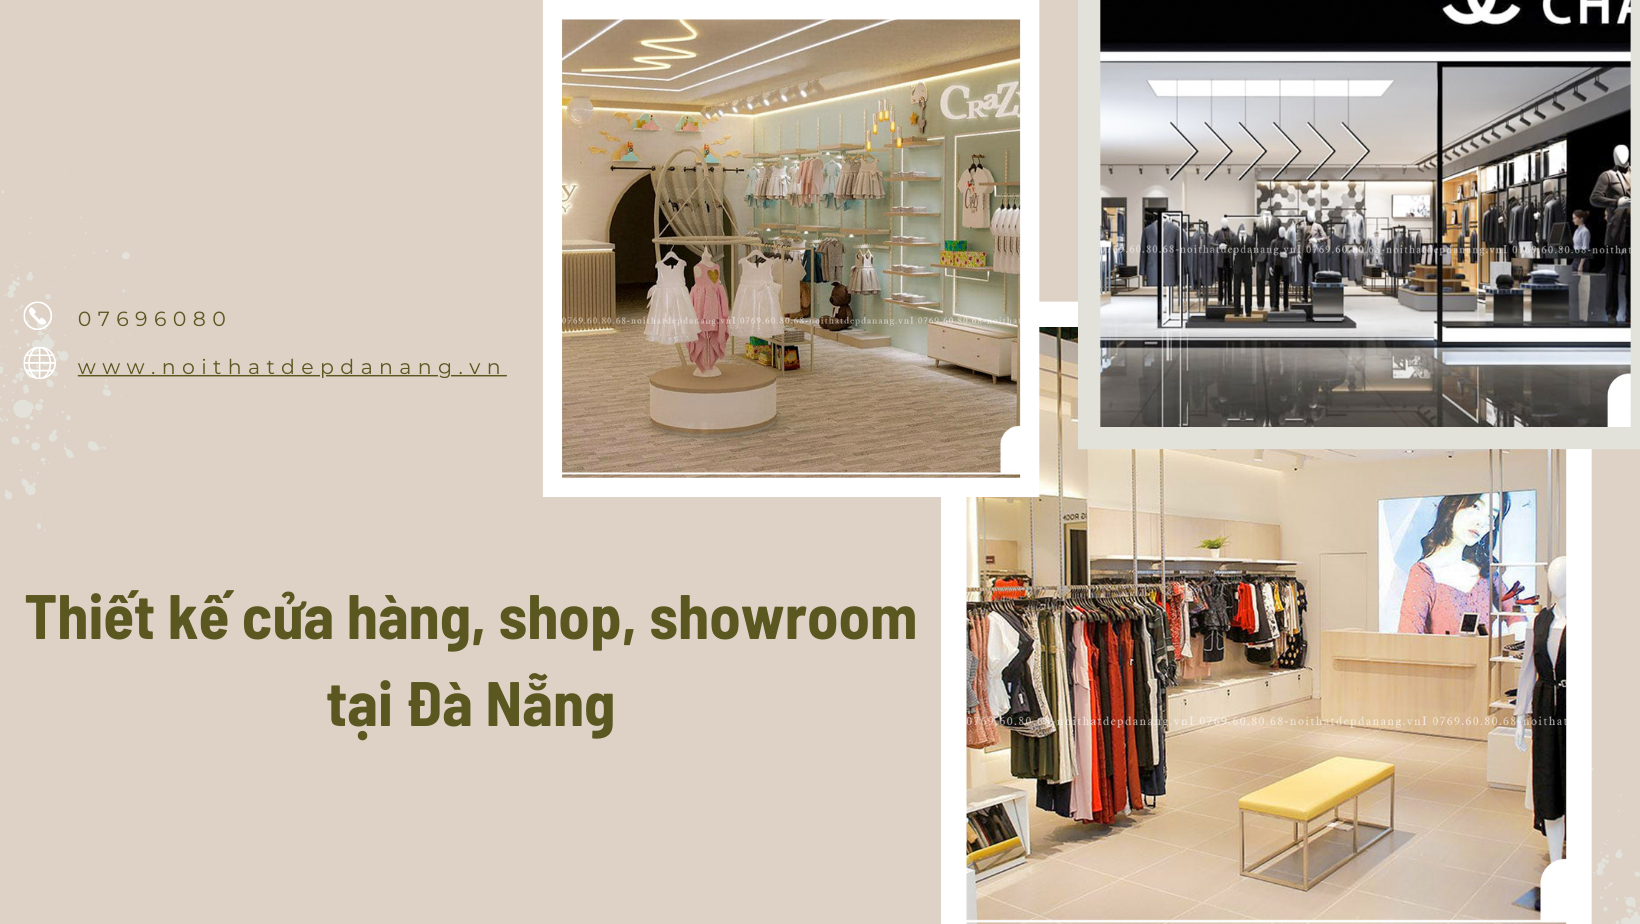 Thiết kế cửa hàng shop showroom tại Đà Nẵng